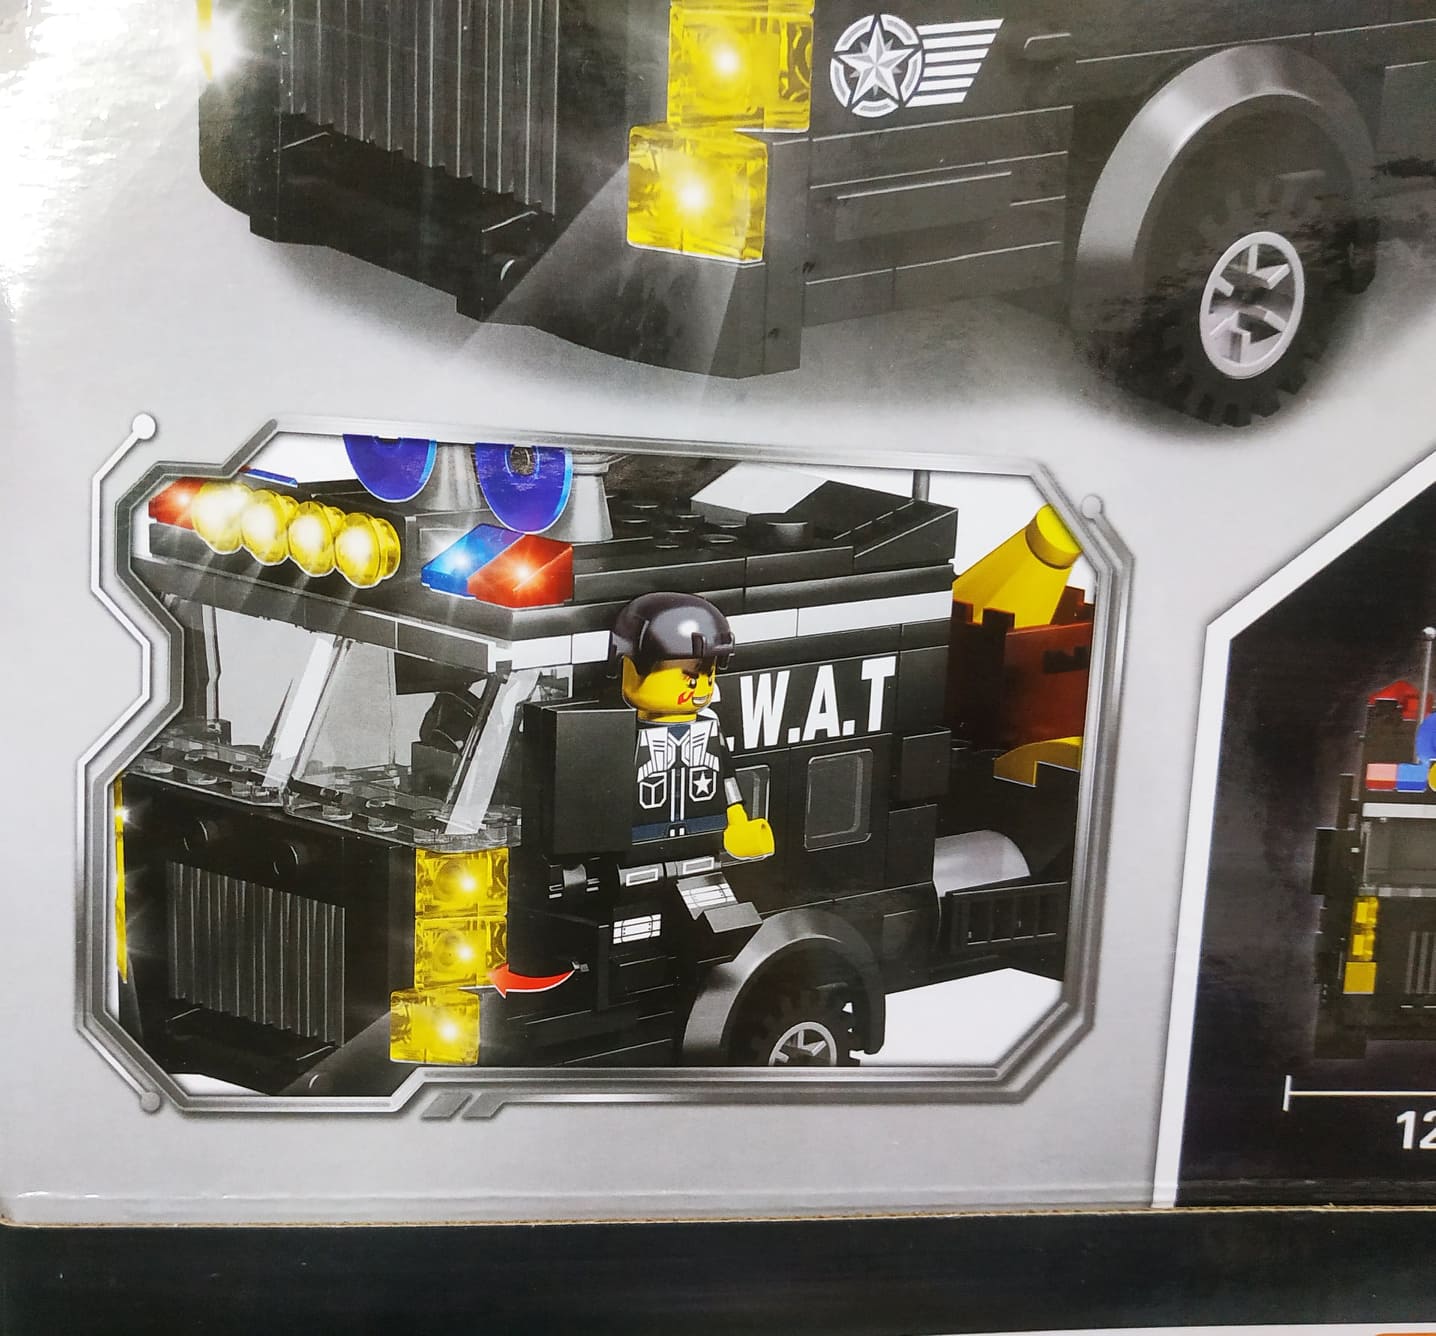 Bộ đồ chơi lắp ghép, xếp hình xe chỉ huy màu đen chuyên nghiệp của đội siêu cảnh sát đặc nhiệm (728 miếng ghép)